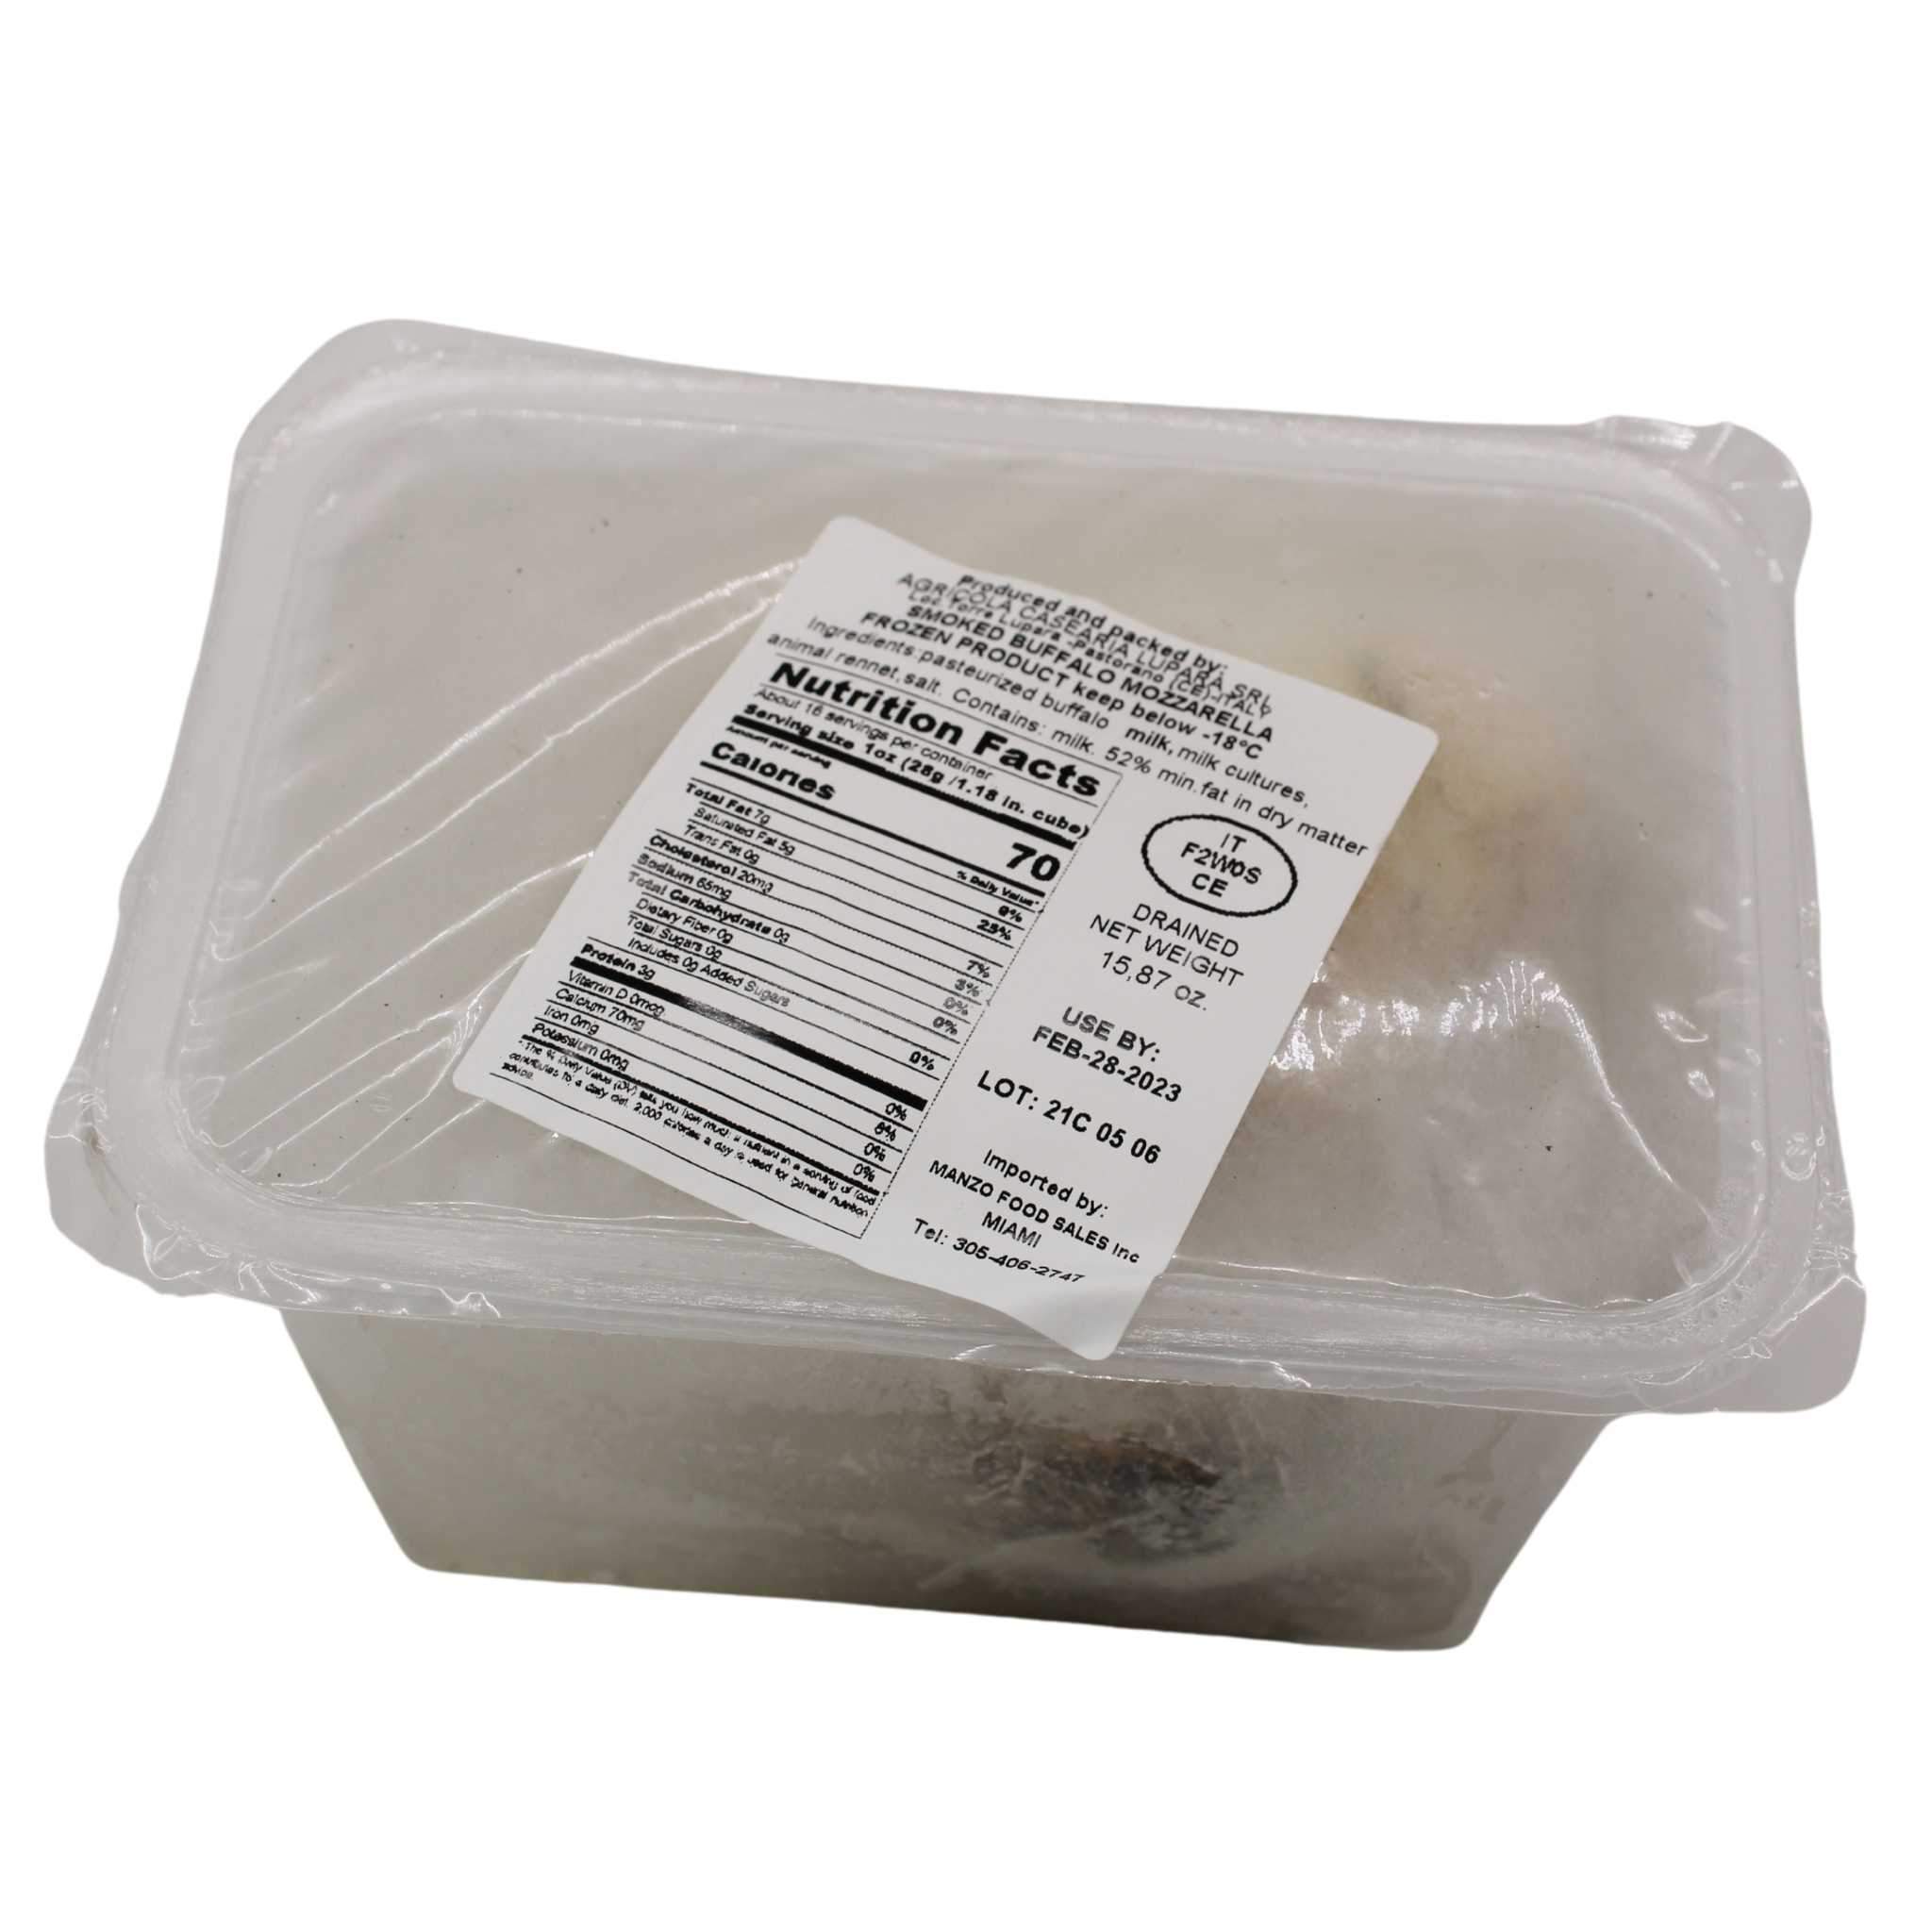 One container of Frozen Lupara Smoke Buffalo Mozzarella